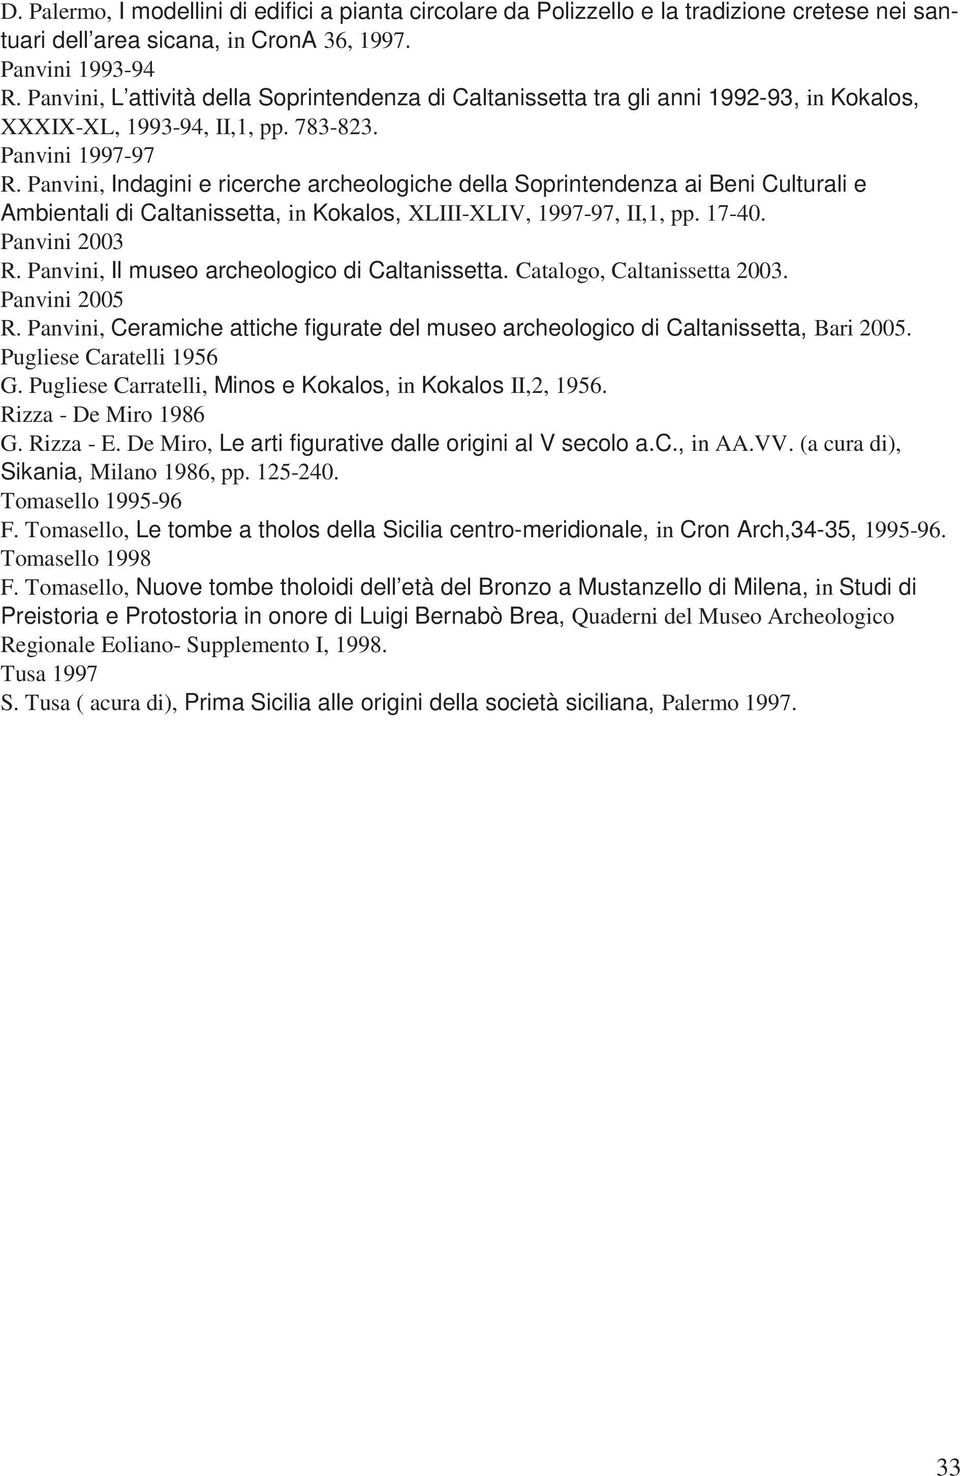 Panvini, Indagini e ricerche archeologiche della Soprintendenza ai Beni Culturali e Ambientali di Caltanissetta, in Kokalos, XLIII-XLIV, 1997-97, II,1, pp. 17-40. Panvini 2003 R.